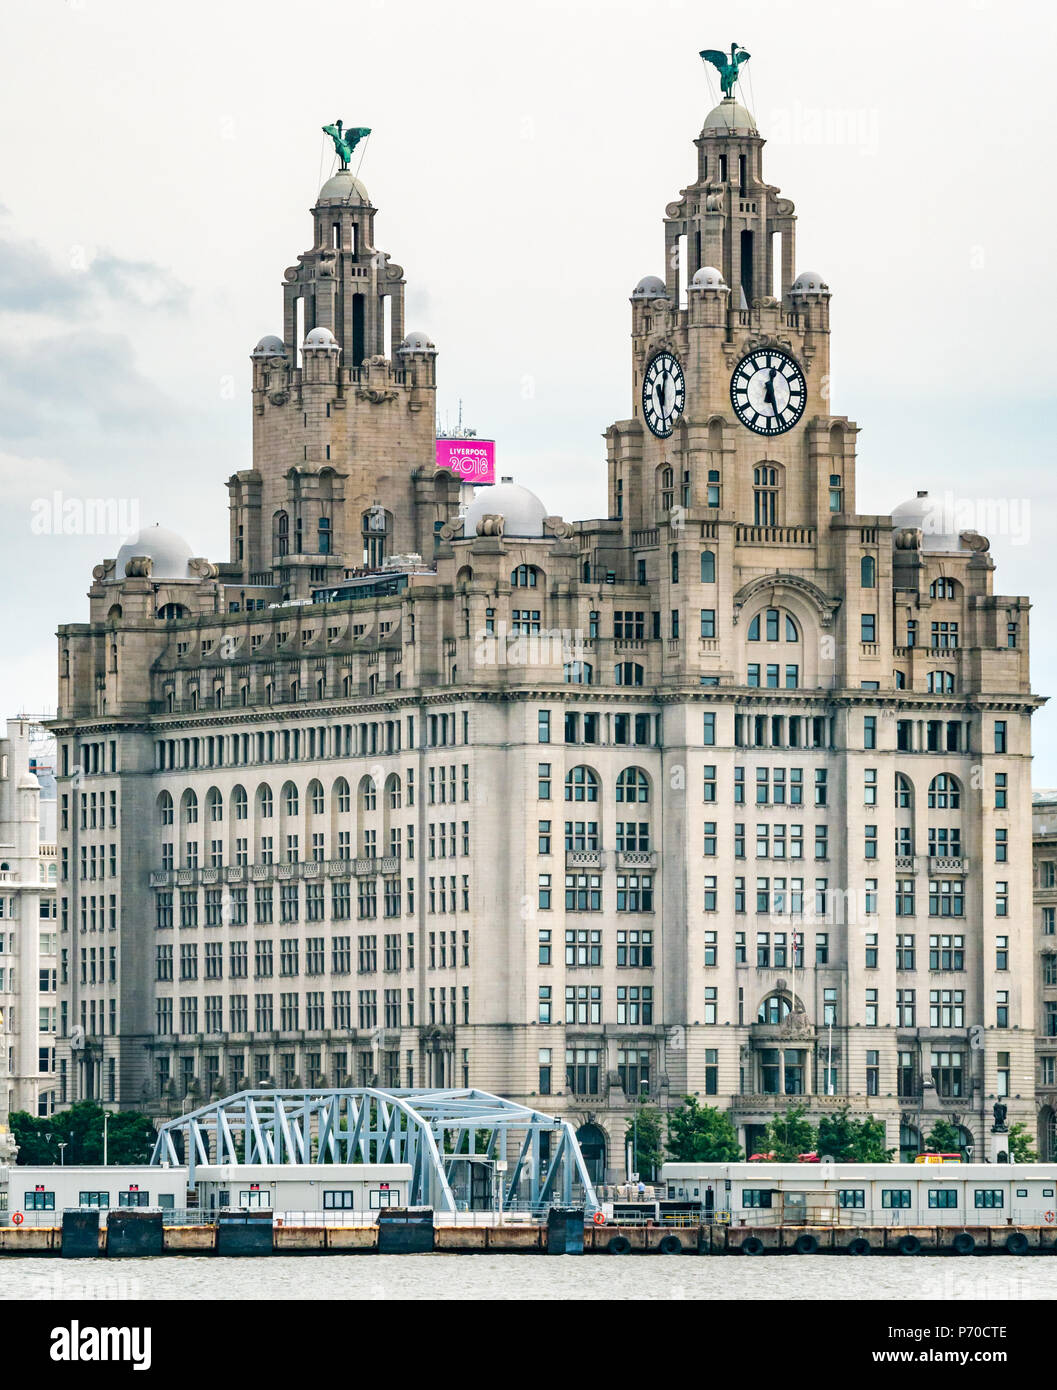 Blick auf die Uhrtürme des Royal Lebergebäudes mit kormoranten Lebervögel und den größten Uhren Großbritanniens, Pier Head, Liverpool, England, Großbritannien Stockfoto